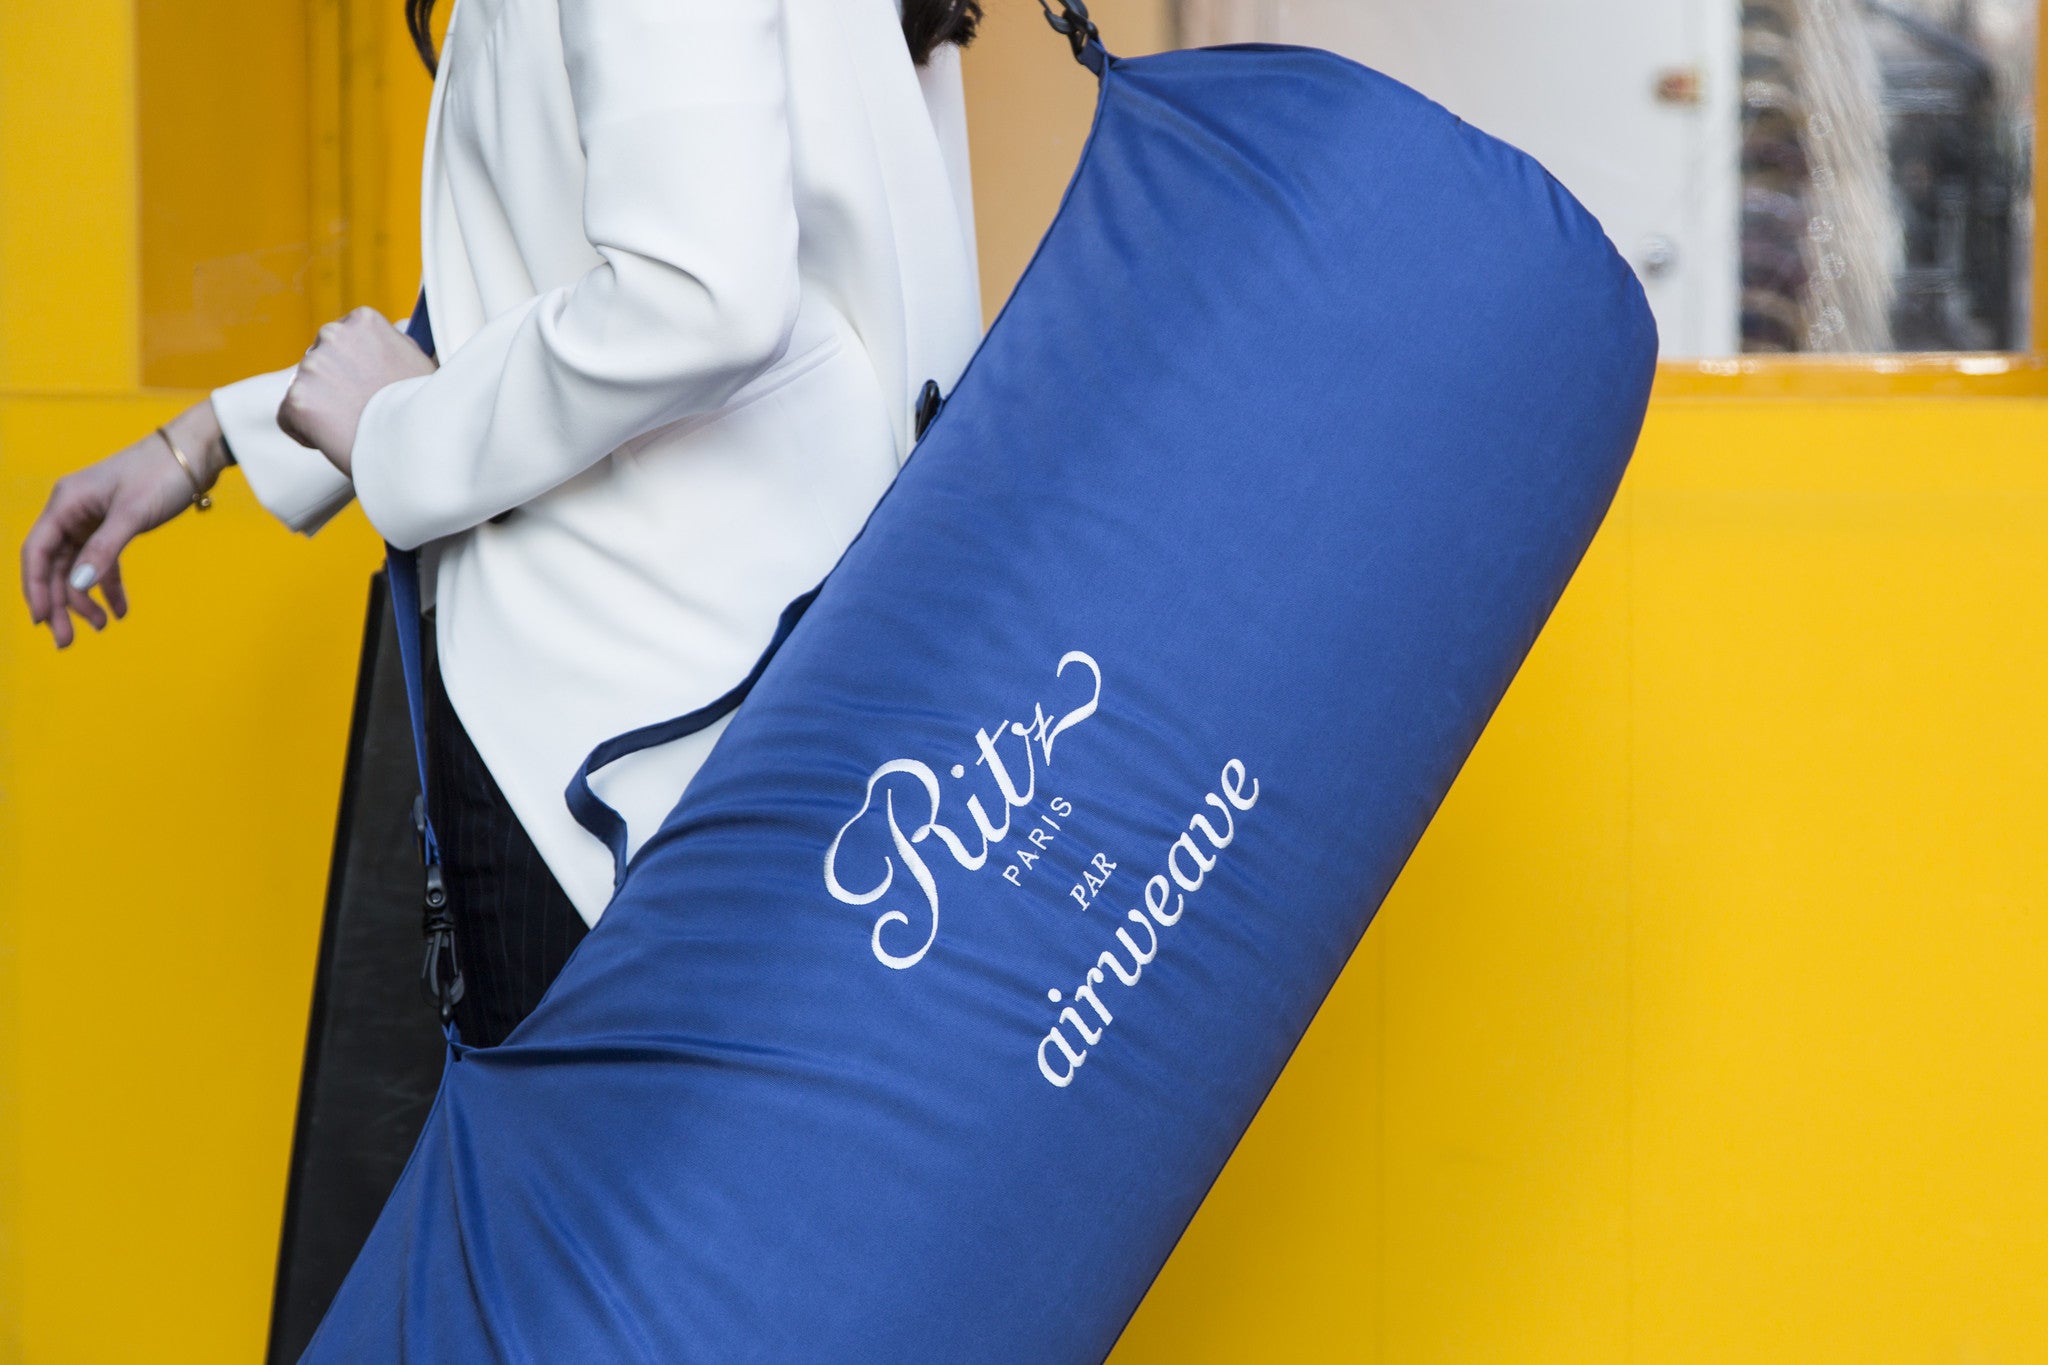 airweave Introduces the Ritz Paris Collection